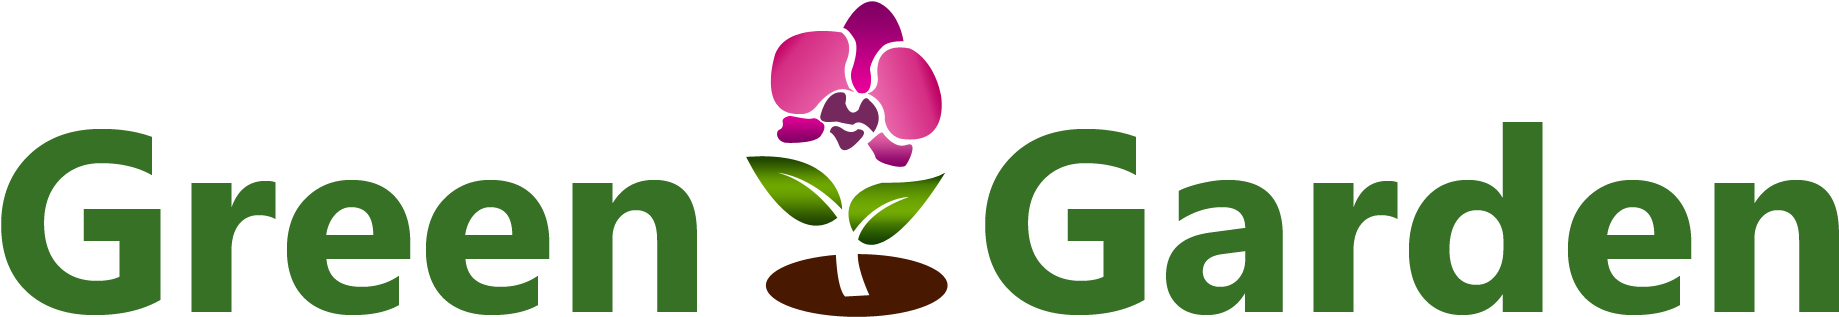 Green Garden Logo (1899x504)